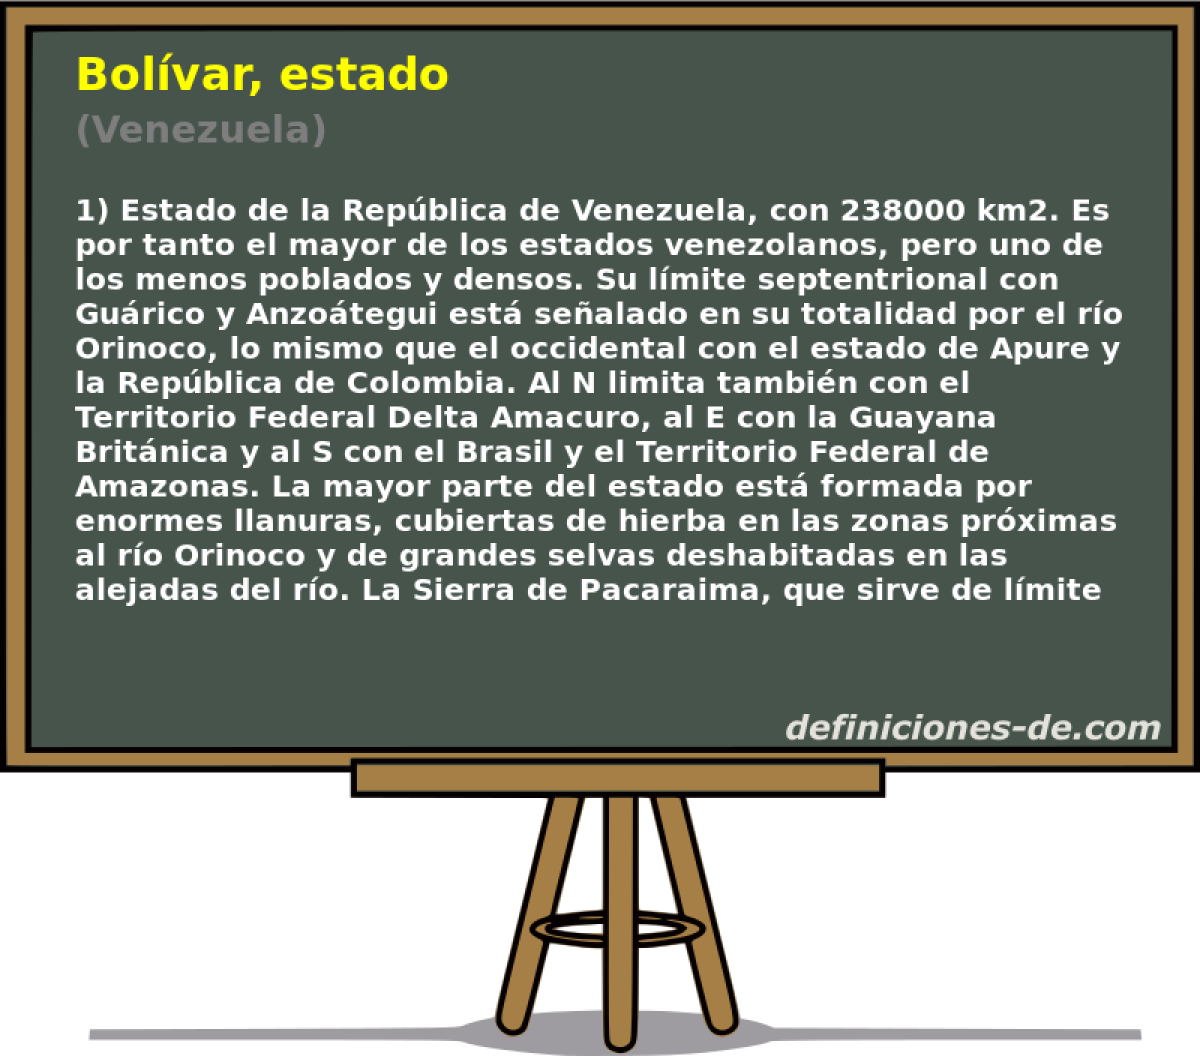 Bolvar, estado (Venezuela)